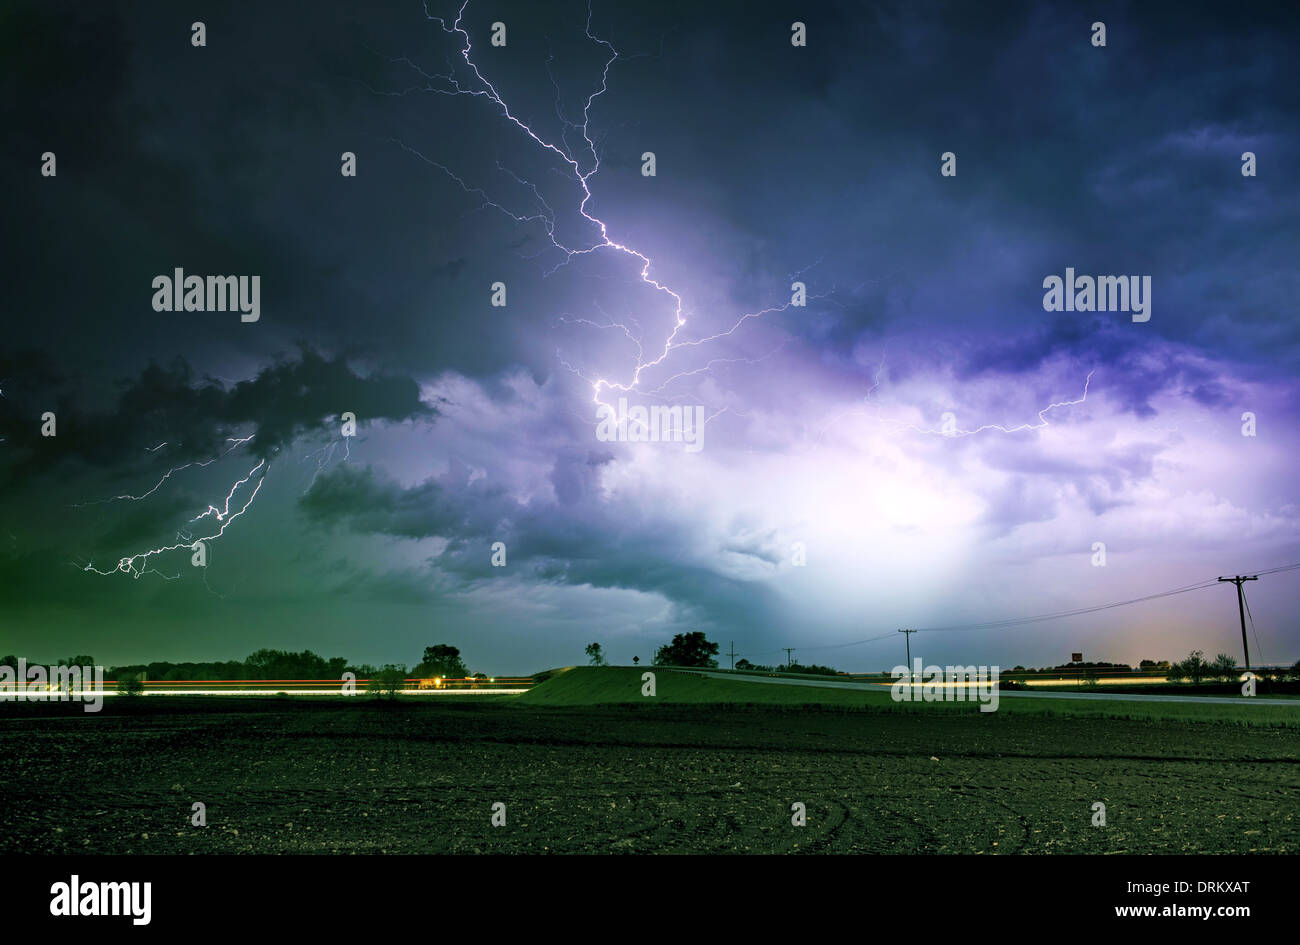 Tornado Alley schwerer Sturm in der Nacht. Starke Blitze über Ackerland in Illinois, USA. Unwetter Fotografie sammeln Stockfoto